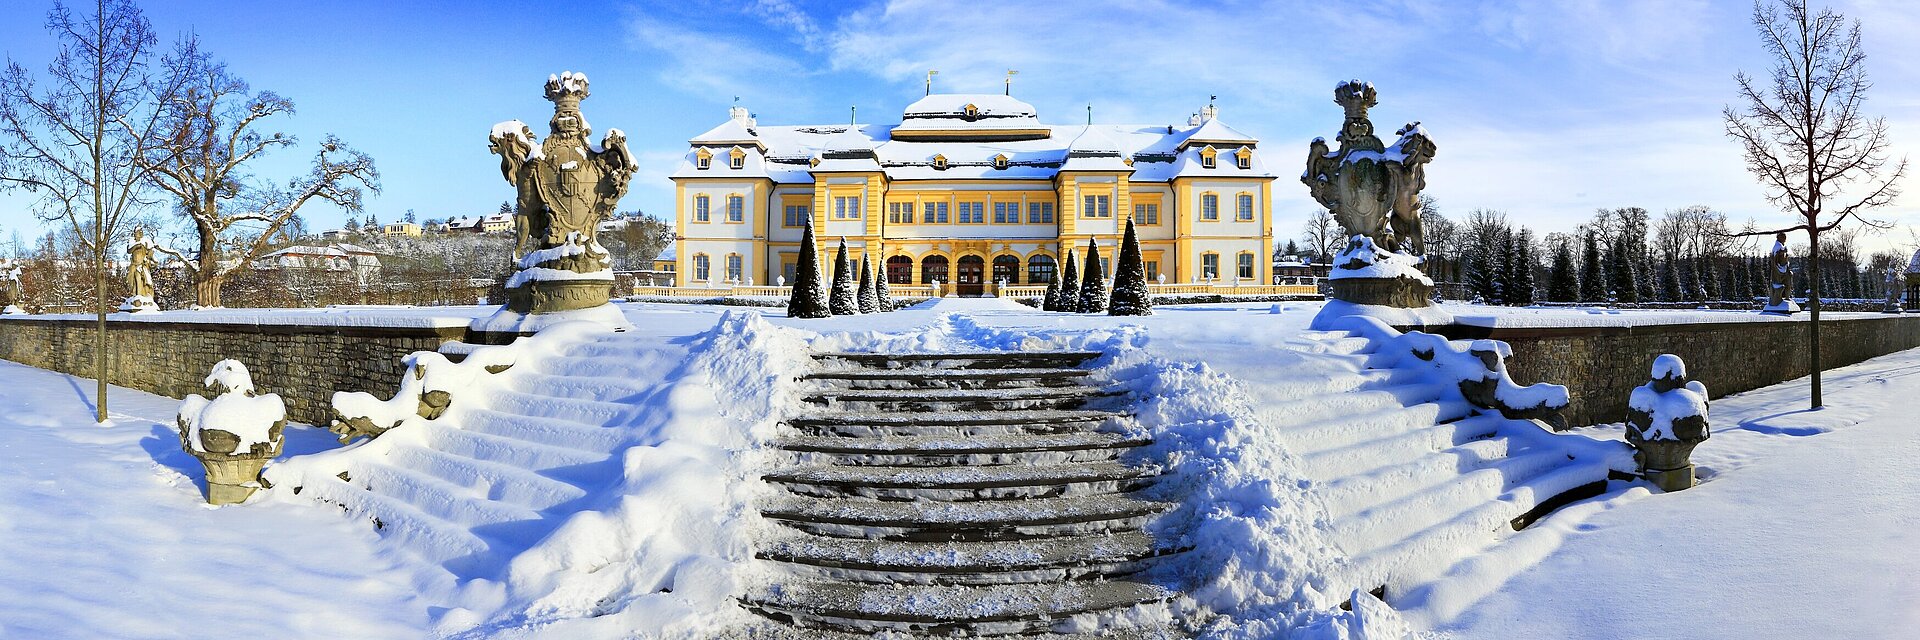 Veitshöchheimer Schloss im Schnee